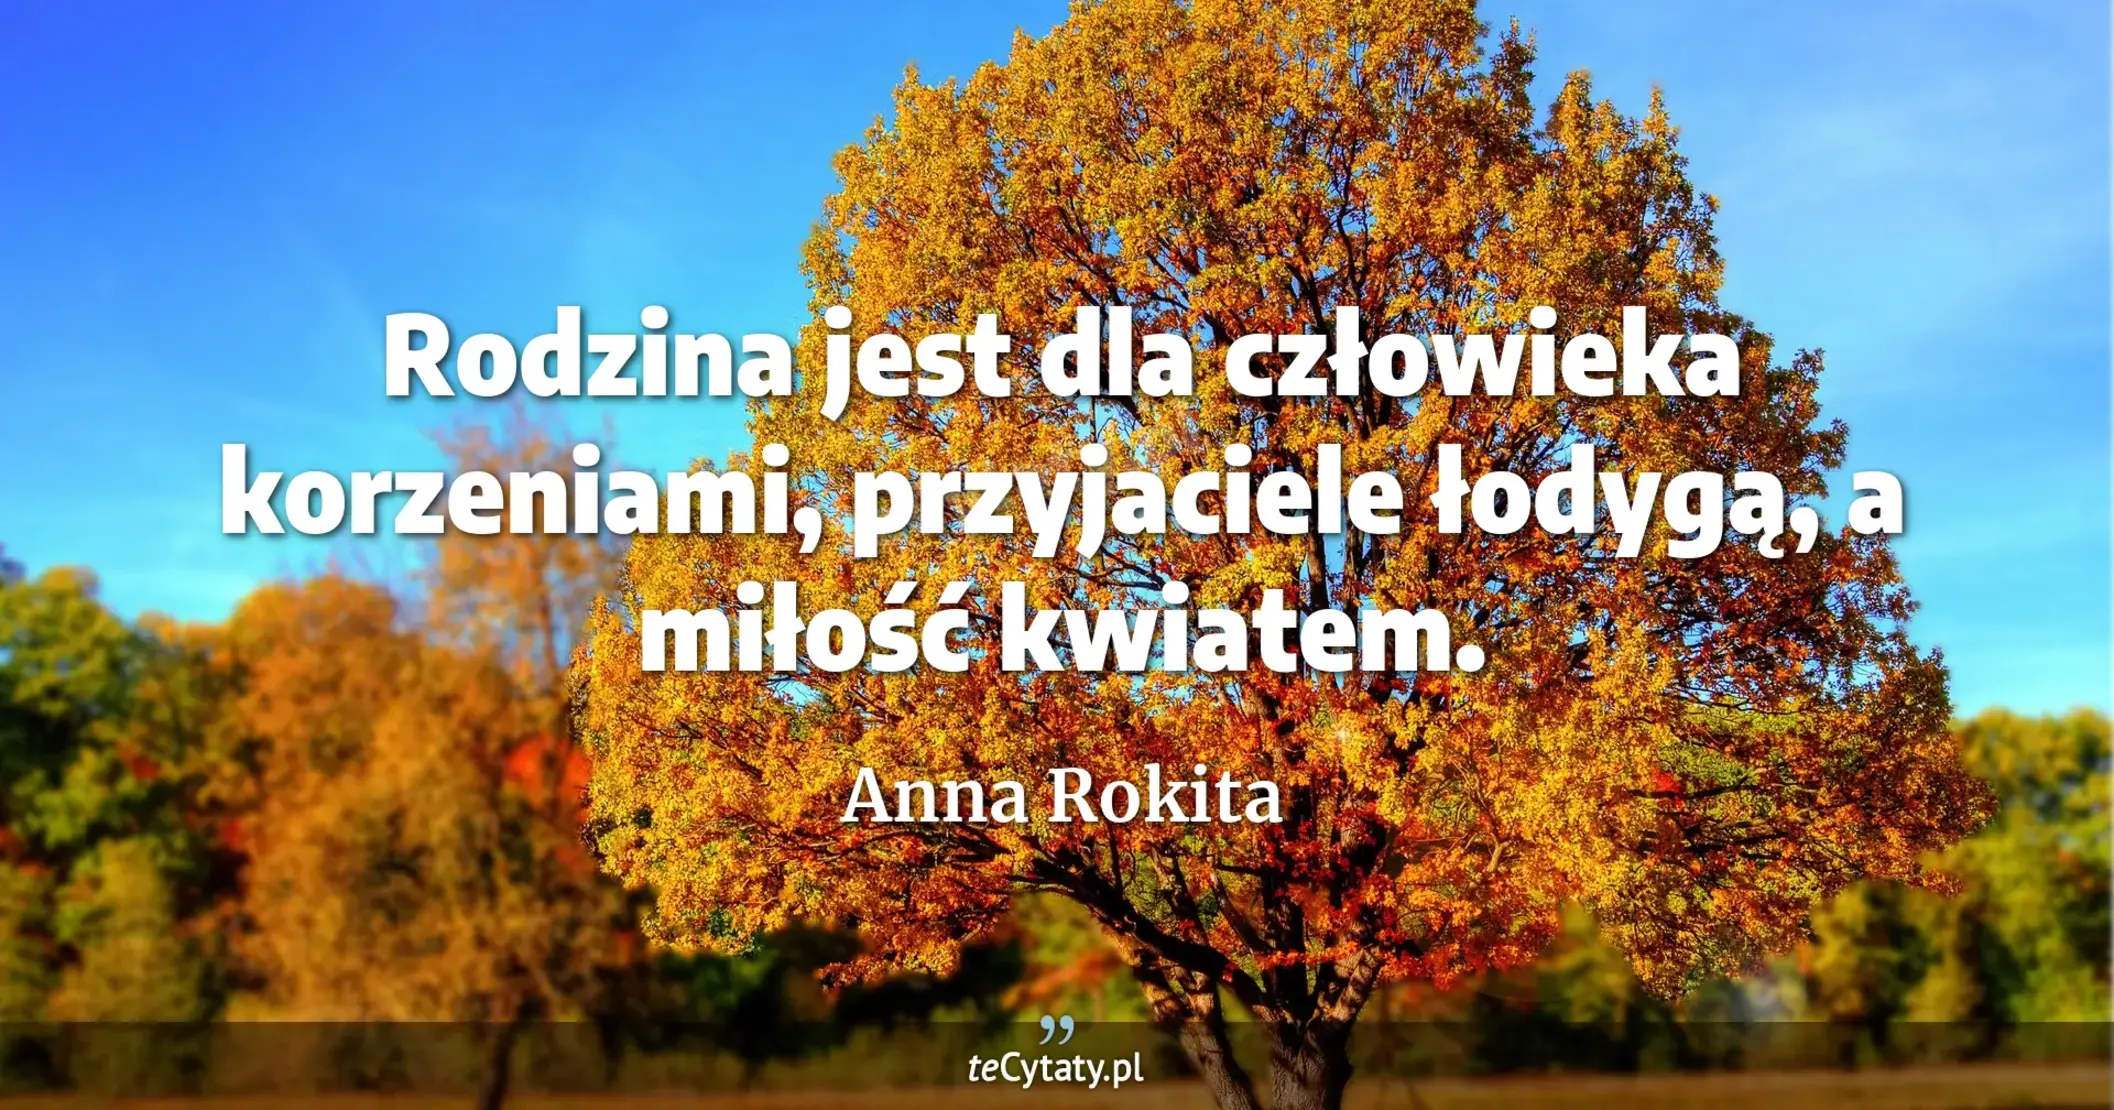 Rodzina jest dla człowieka korzeniami, przyjaciele łodygą, a miłość kwiatem. - Anna Rokita